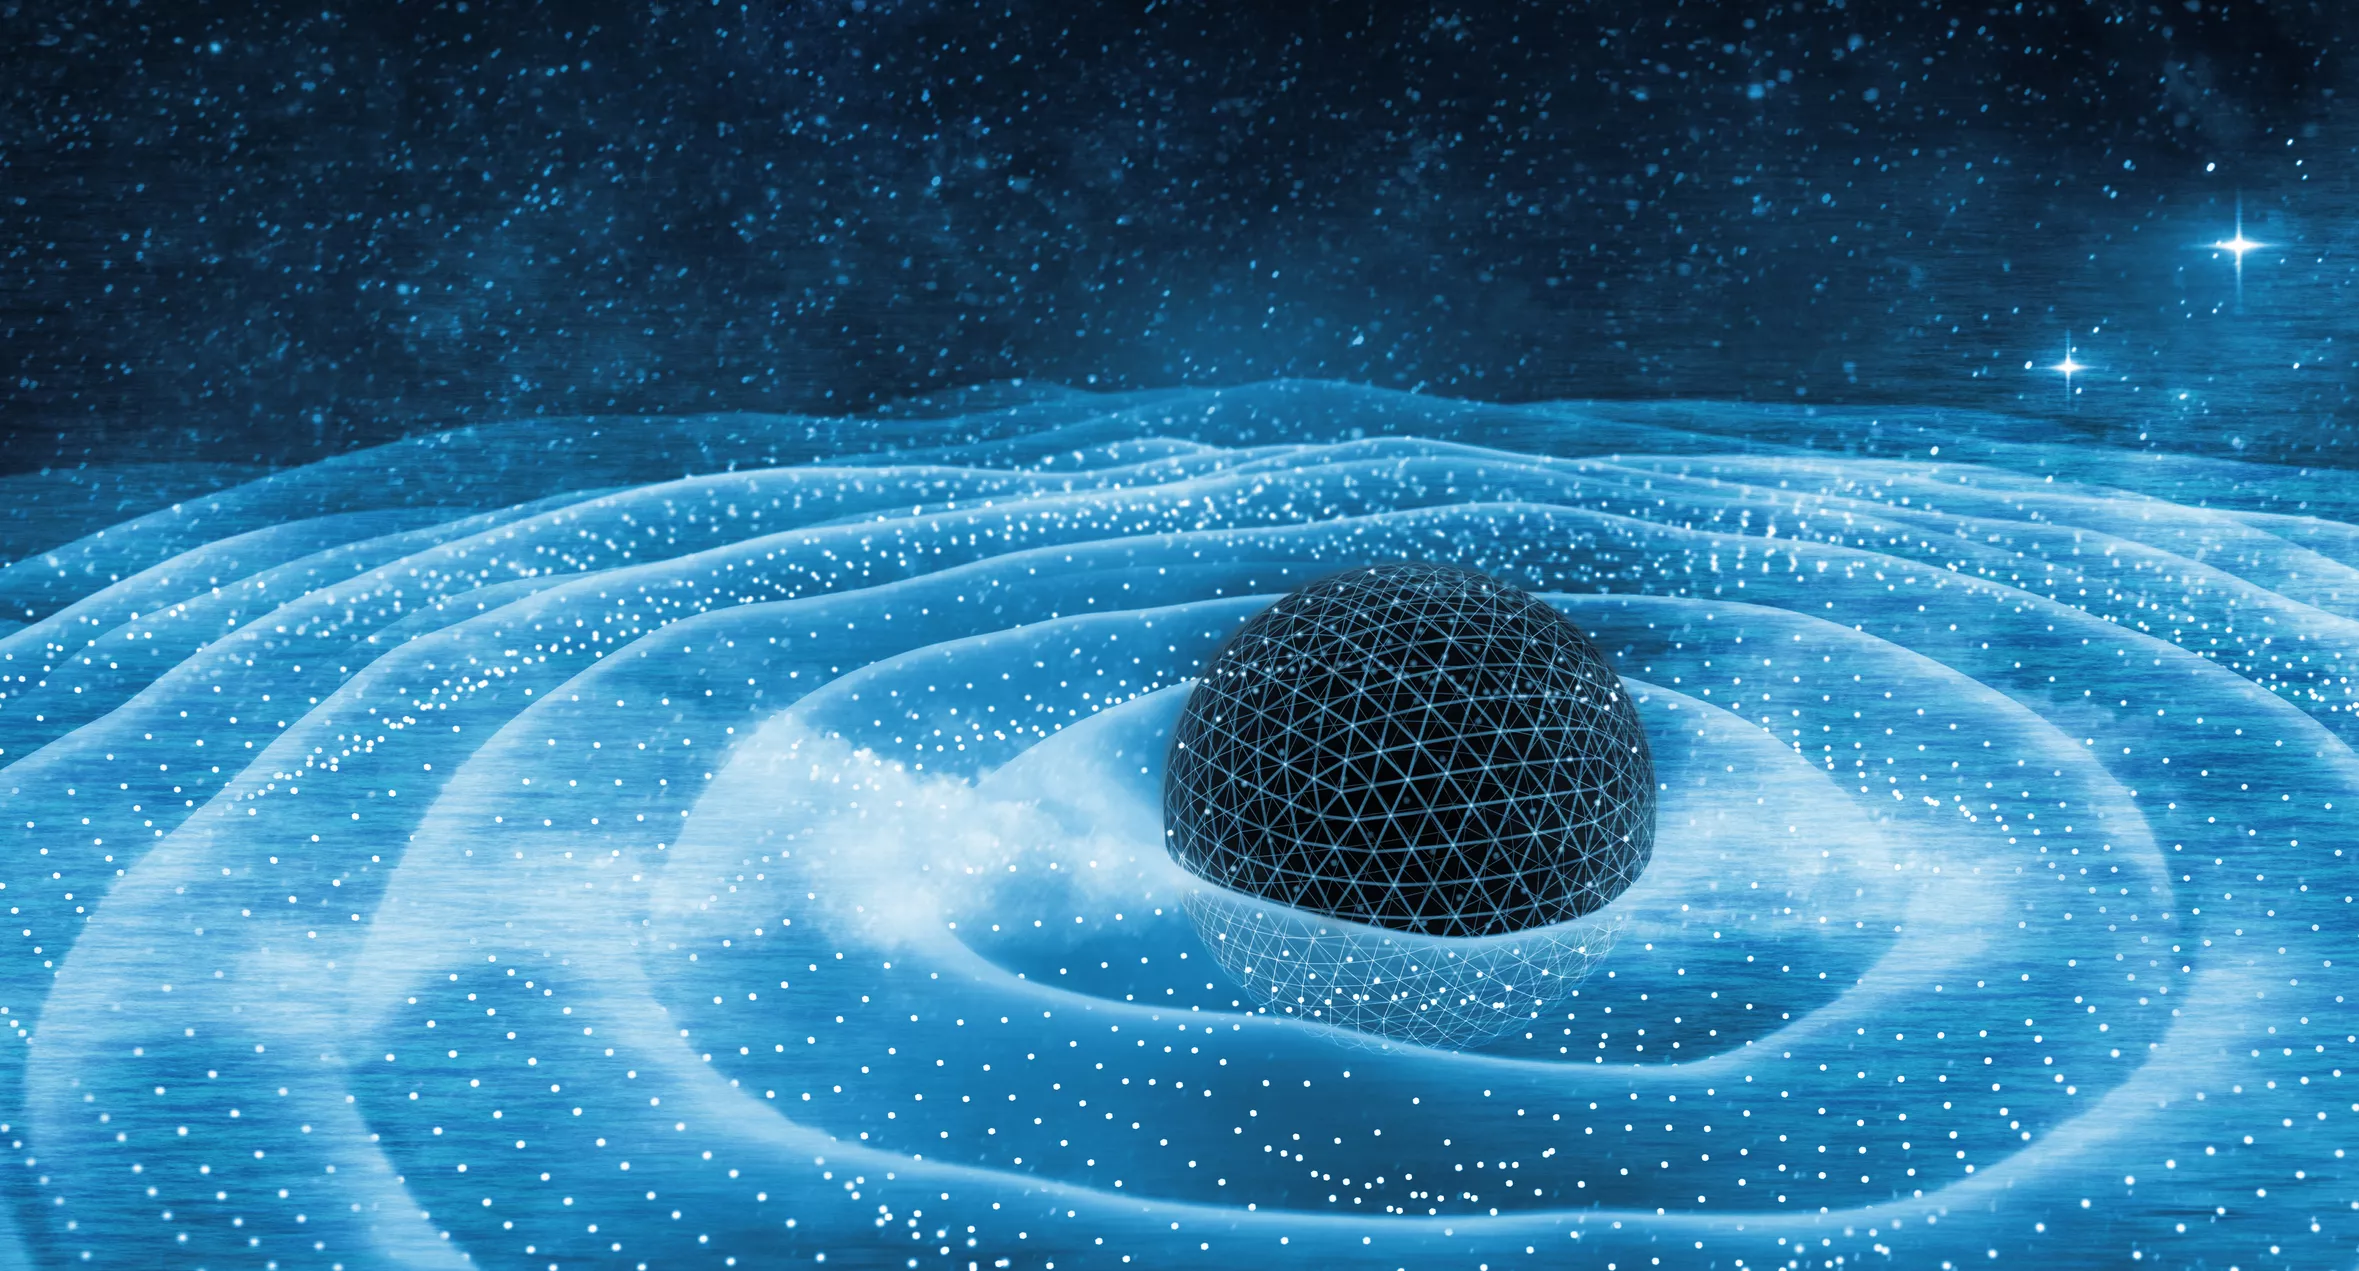 Les ones gravitacionals són vibracions provocades pel moviment accelerat de cossos molt massius